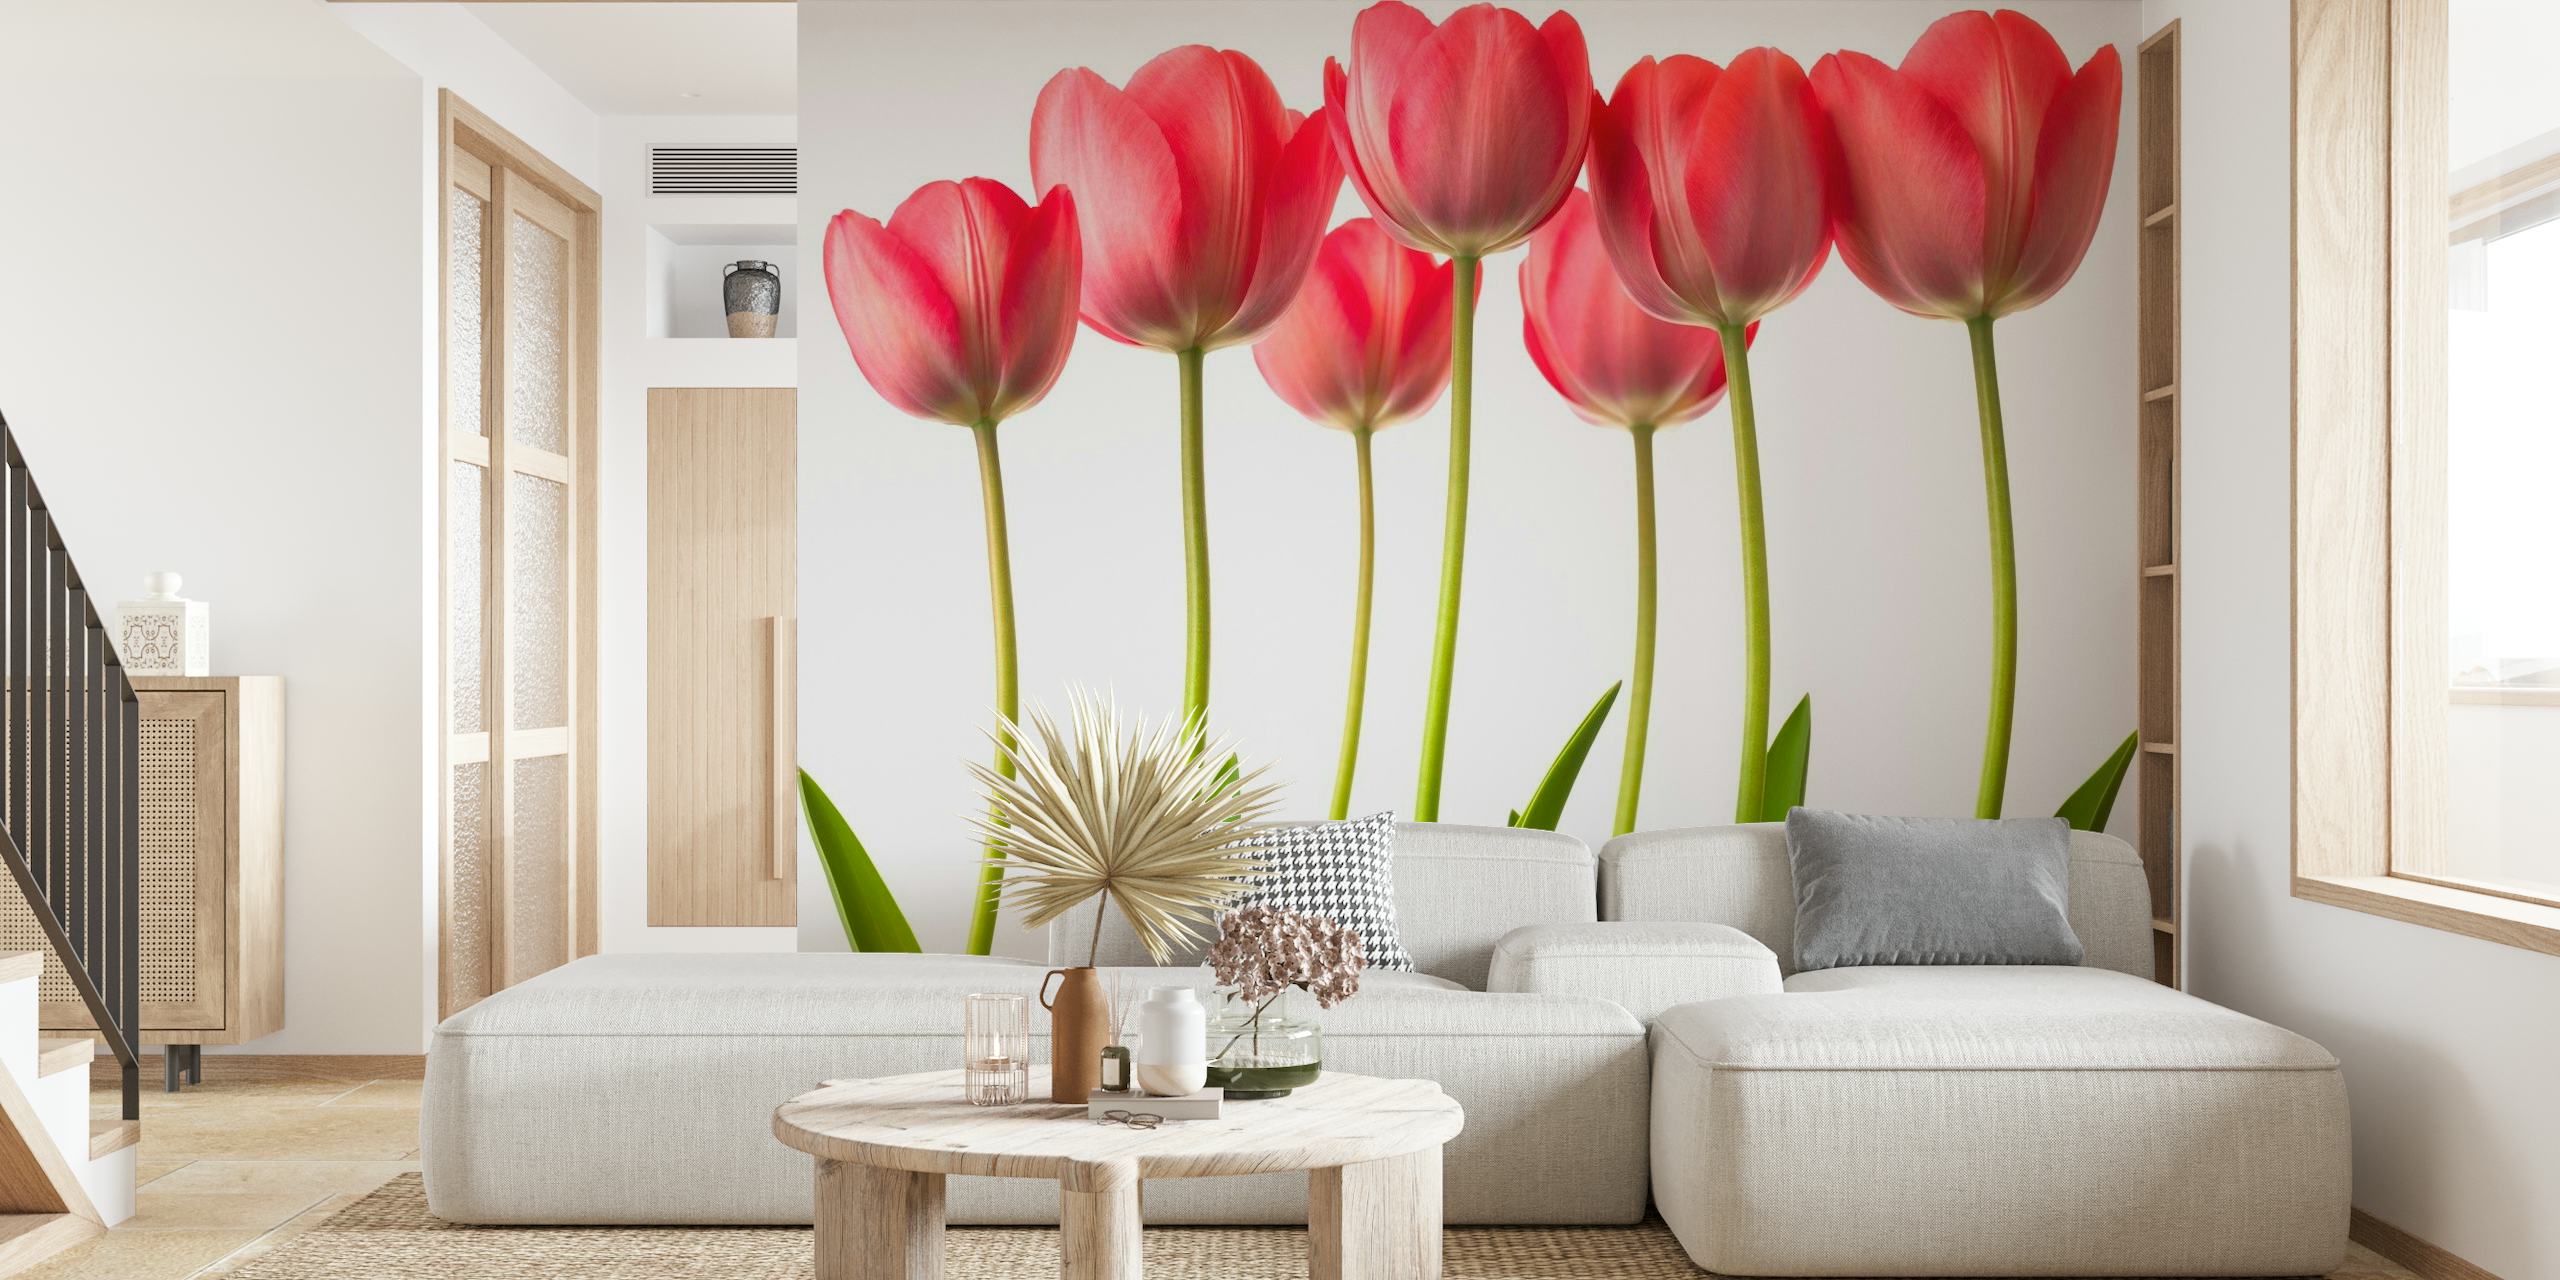 Growing Tulips wallpaper